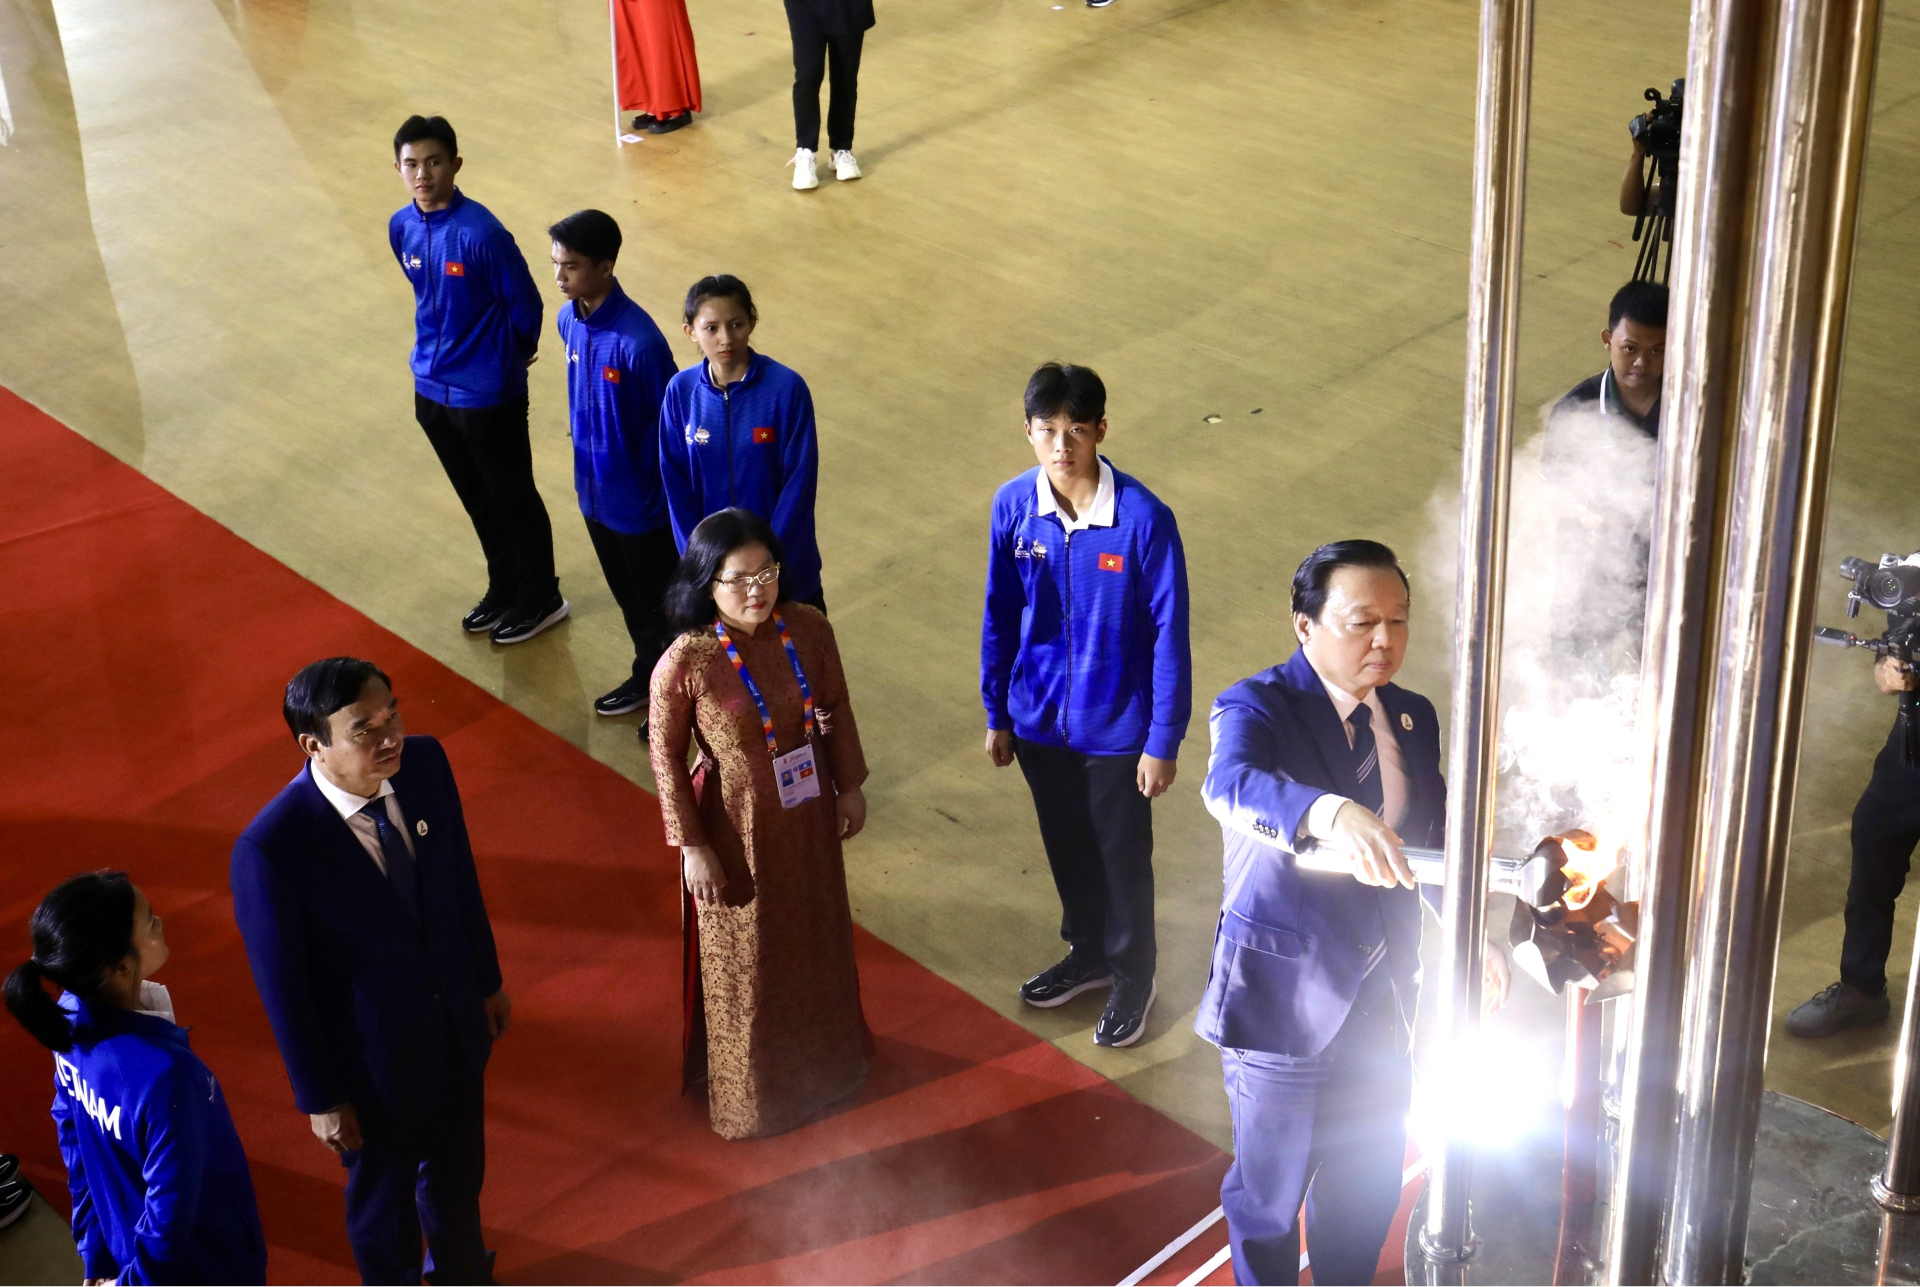 Ngọn lửa của Đại hội Thể thao học sinh Đông Nam Á được Phó Thủ tướng Chính phủ Trần Hồng Hà thắp lên trên lễ đài.